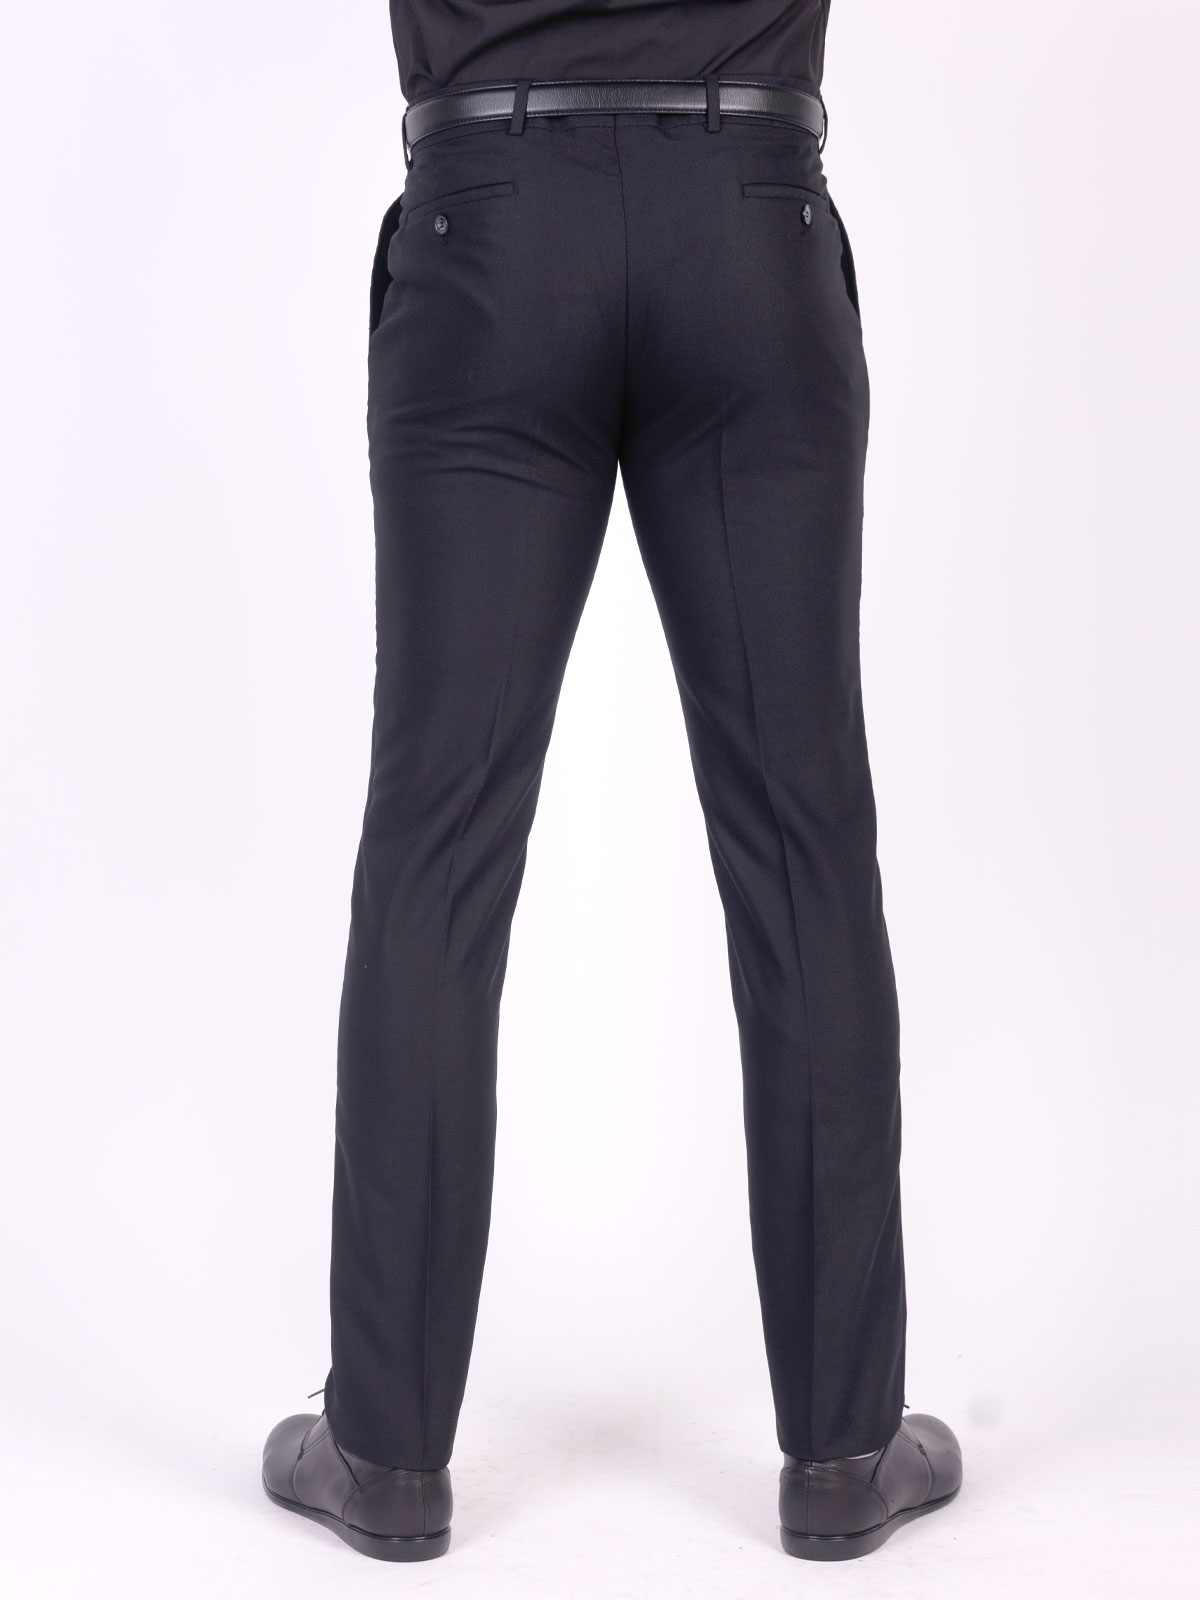 Ανδρικό κλασικό παντελόνι σε μαύρο χρώμα - 63664 € 62.99 img2